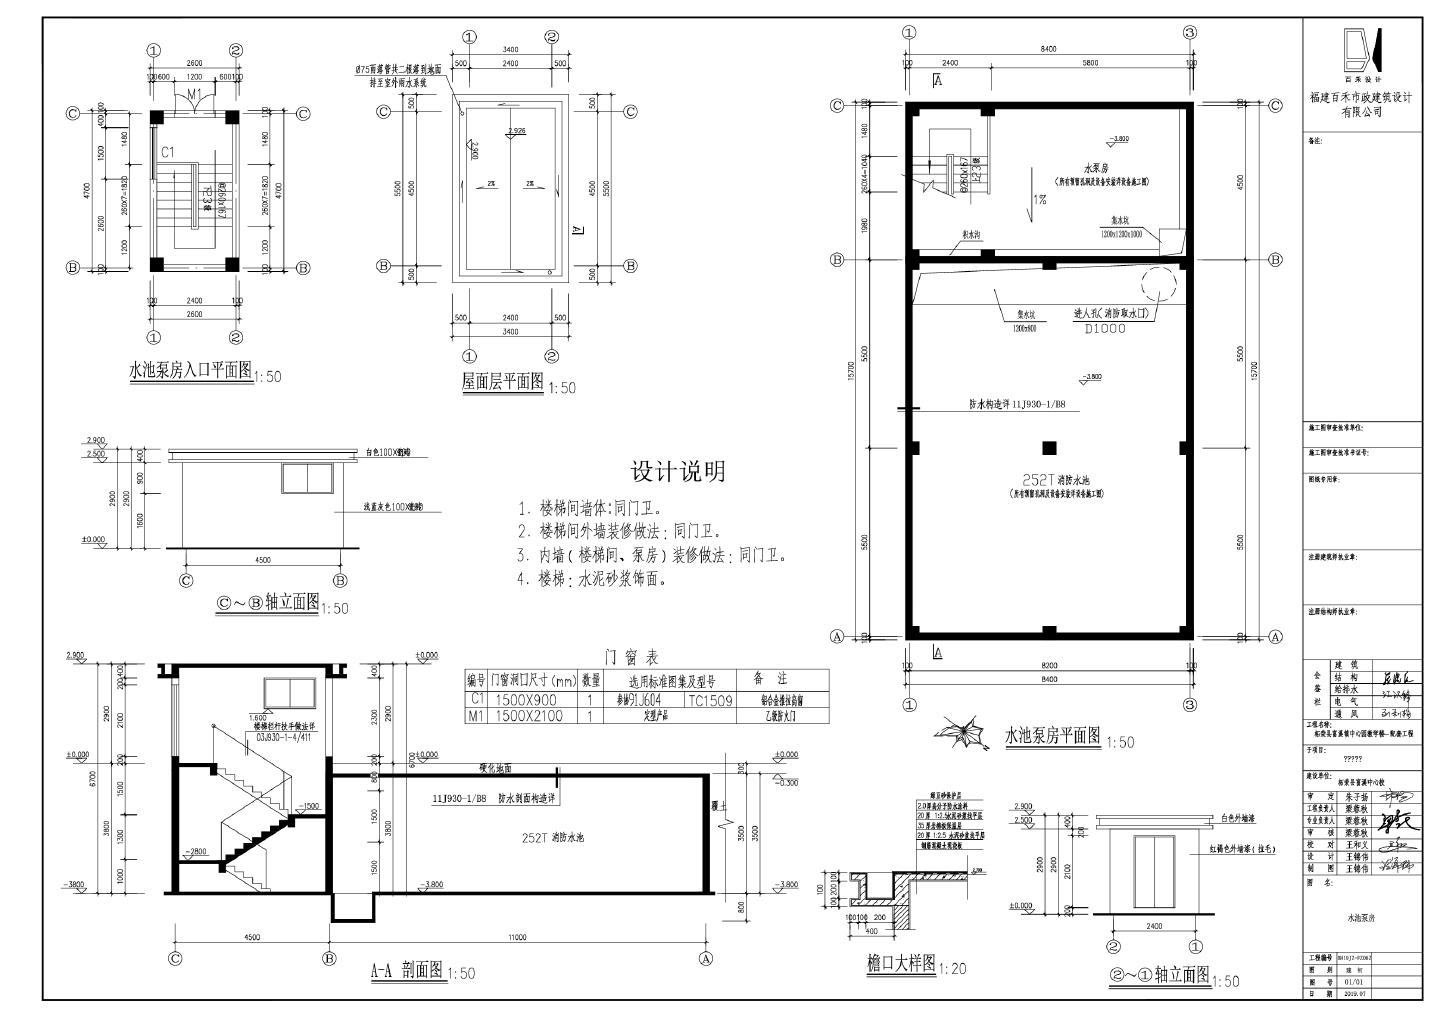 柘荣县富溪中心园教学楼-配套工程252T水泵房CAD图.dwg